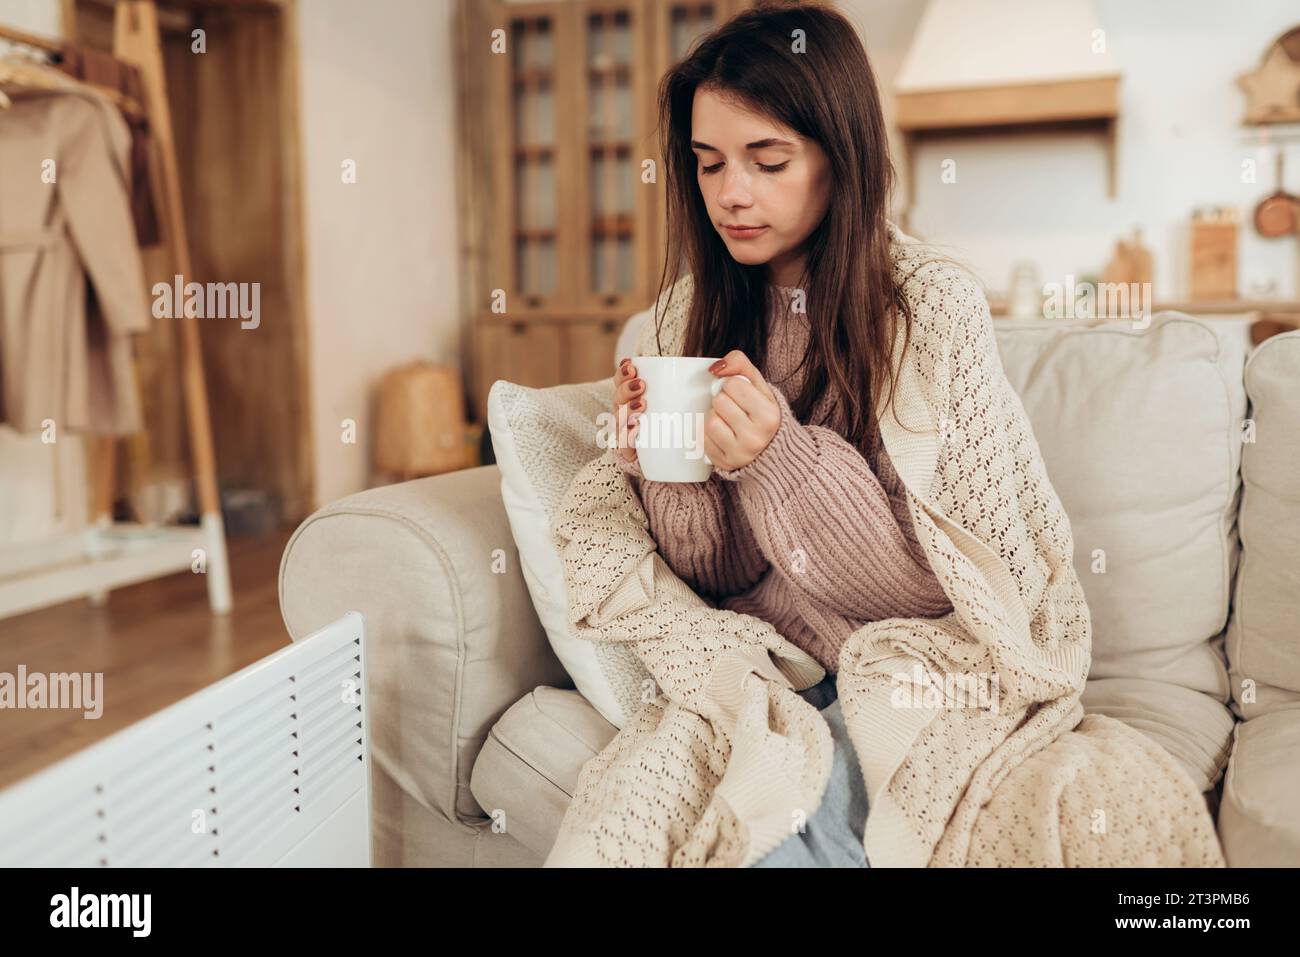 Junge Frau in warmen Kleidern und Karo, die eine Tasse heißes Getränk hält, während sie zu Hause auf der Couch in der Nähe der elektrischen Heizung sitzt. Hochwertige Fotos Stockfoto